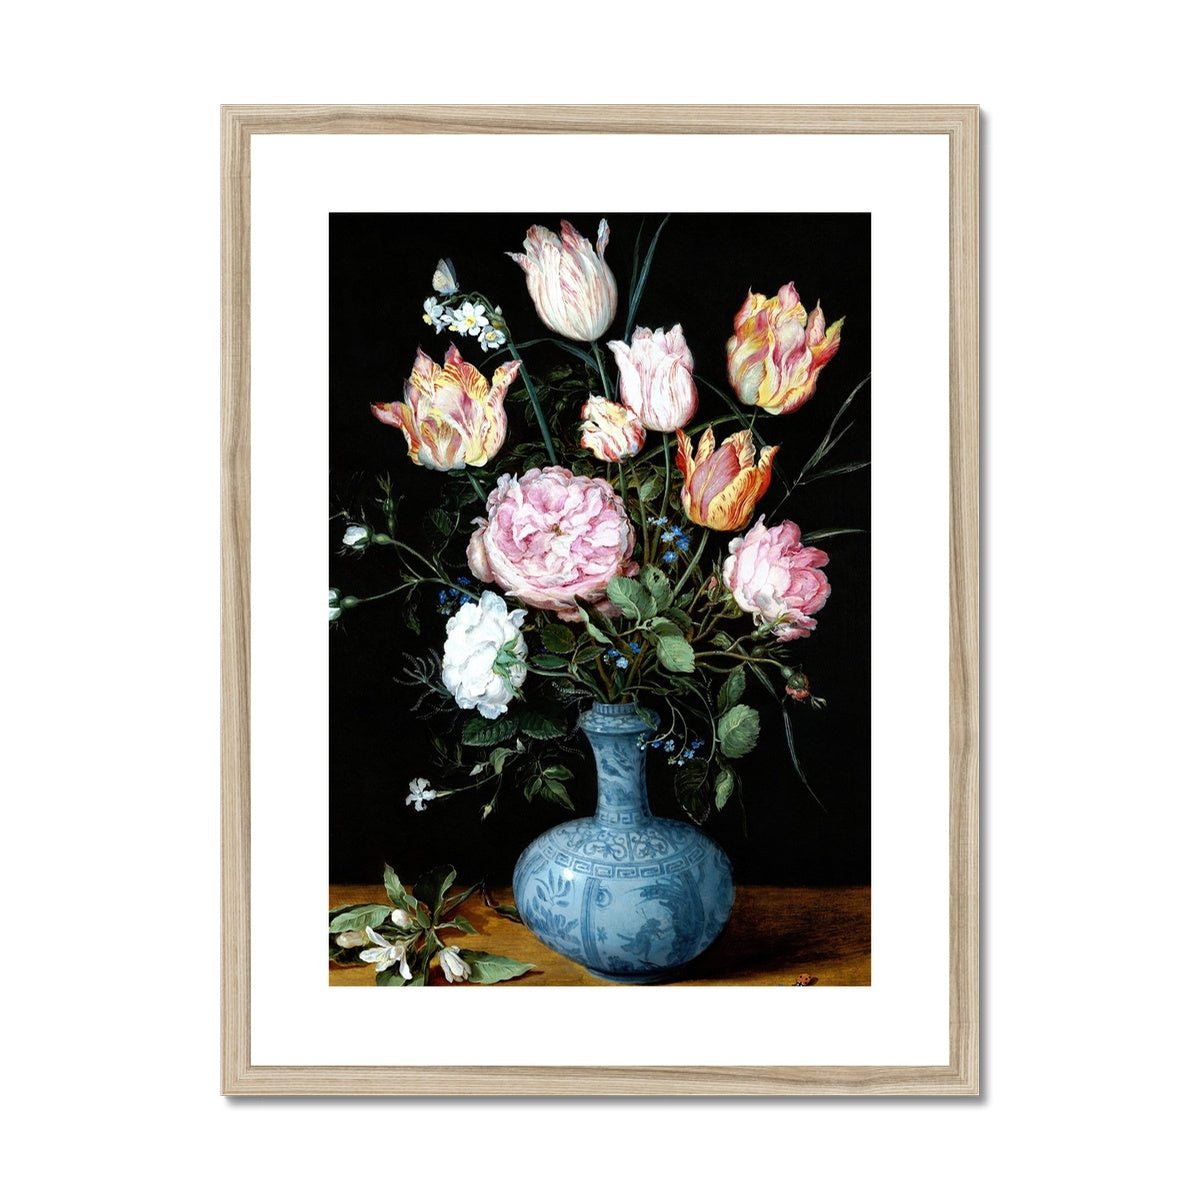 &#39;Flowers in a Wan-Li Vase&#39; Still Life by Jan Breughel the Elder. Open Edition Fine Art Print. Historic Art